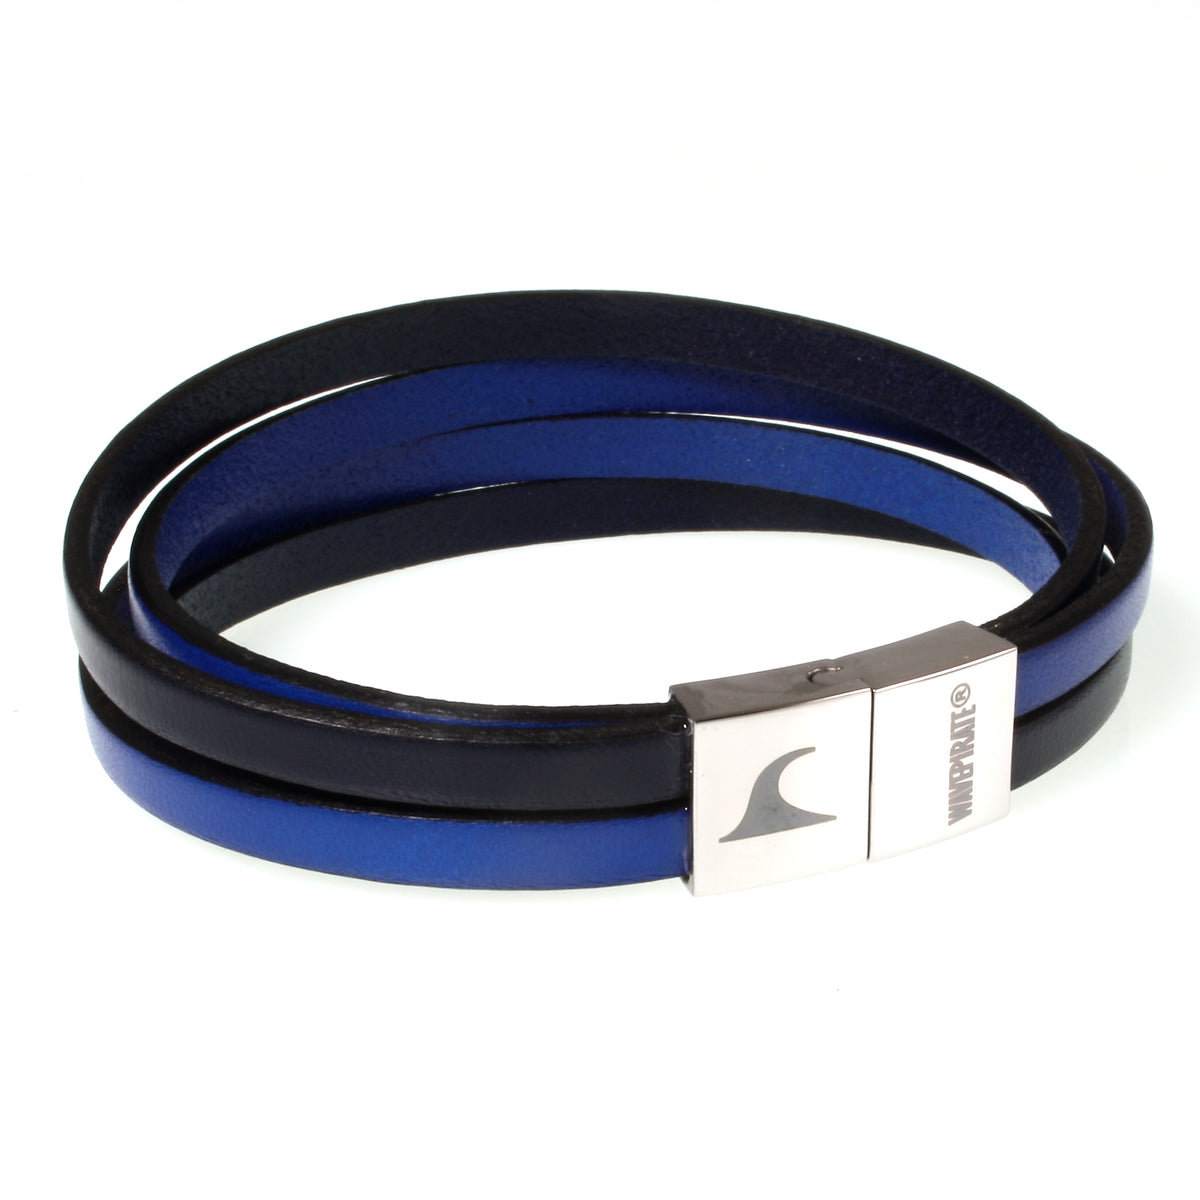 Herren-Leder-Armband-Twist-navy-blau-flach-Edelstahlverschluss-vorn-wavepirate-shop